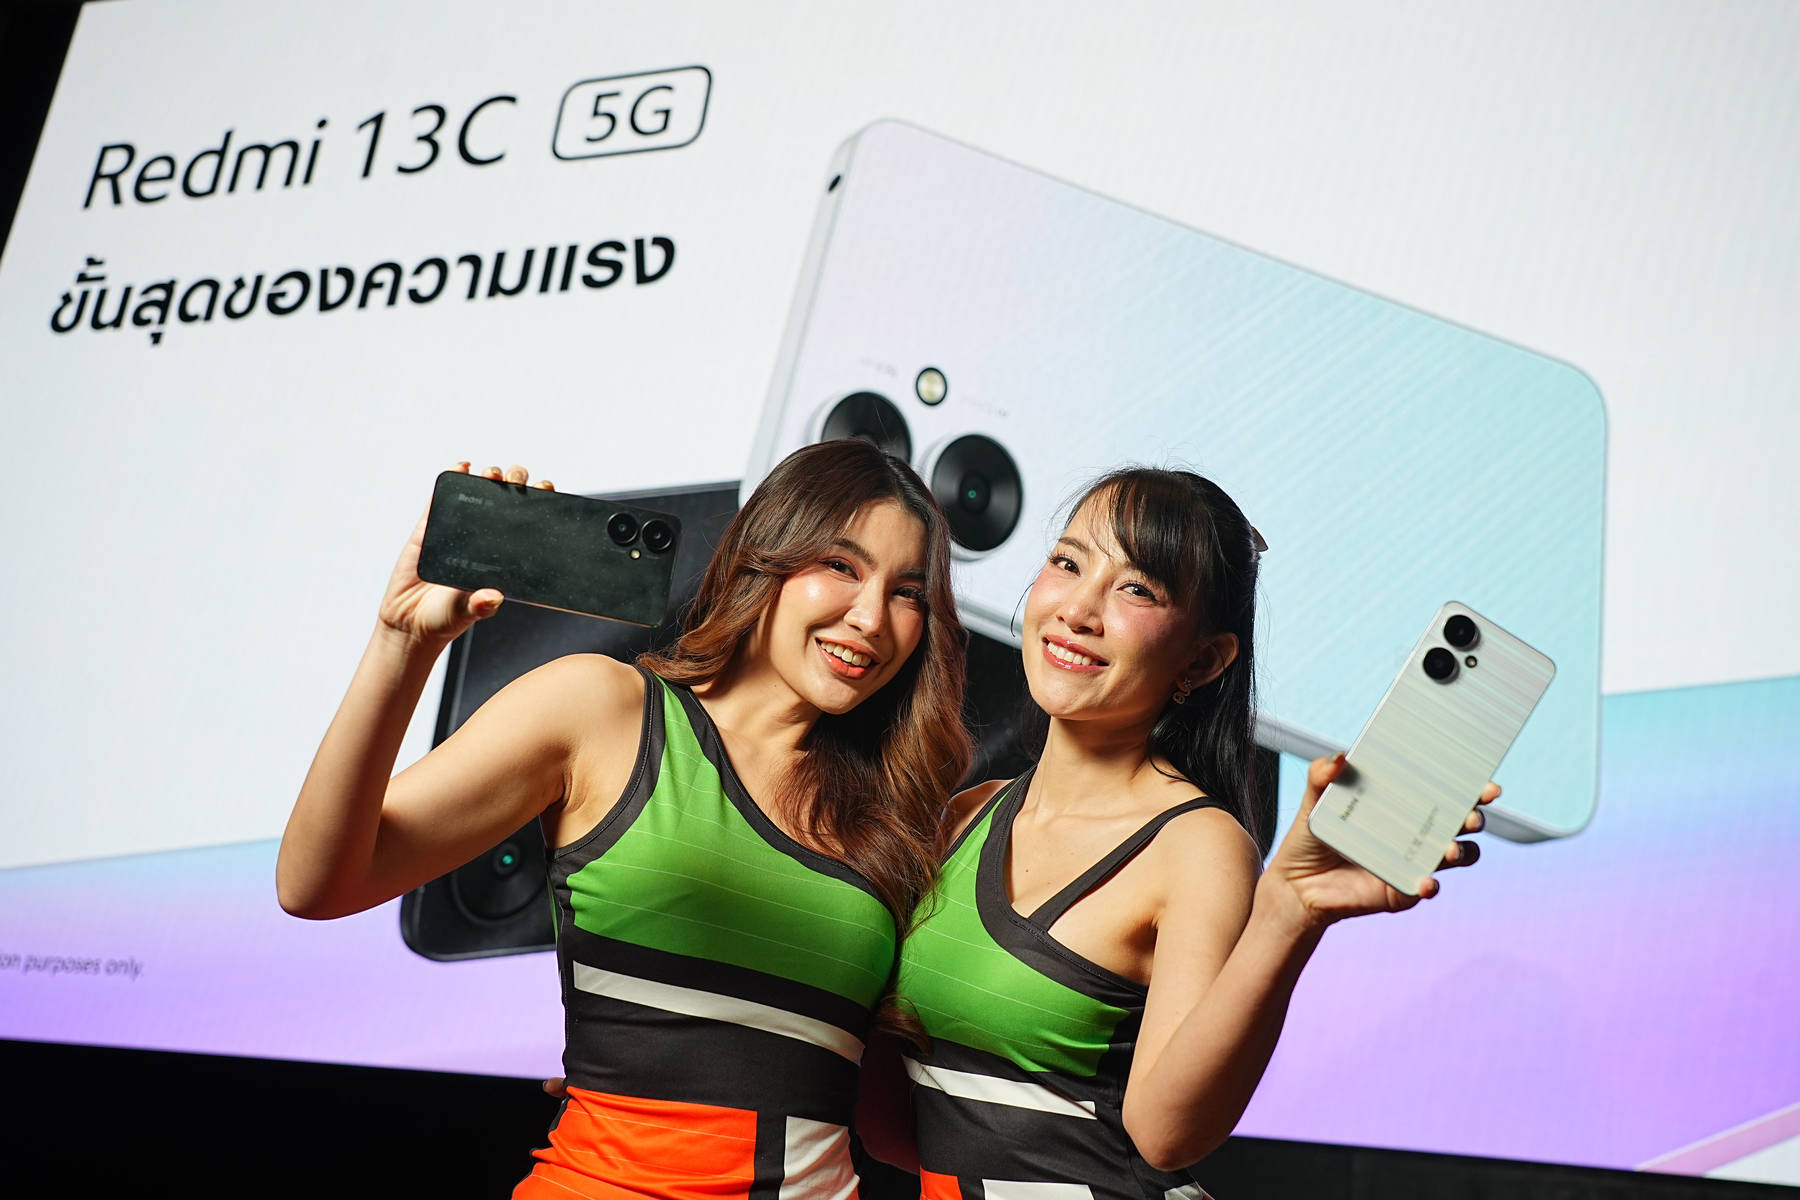 ขายแล้ว Redmi 13C 5G สมาร์ทโฟนเพื่อความบันเทิงรอบด้าน เริ่มต้น 4,999 บาท